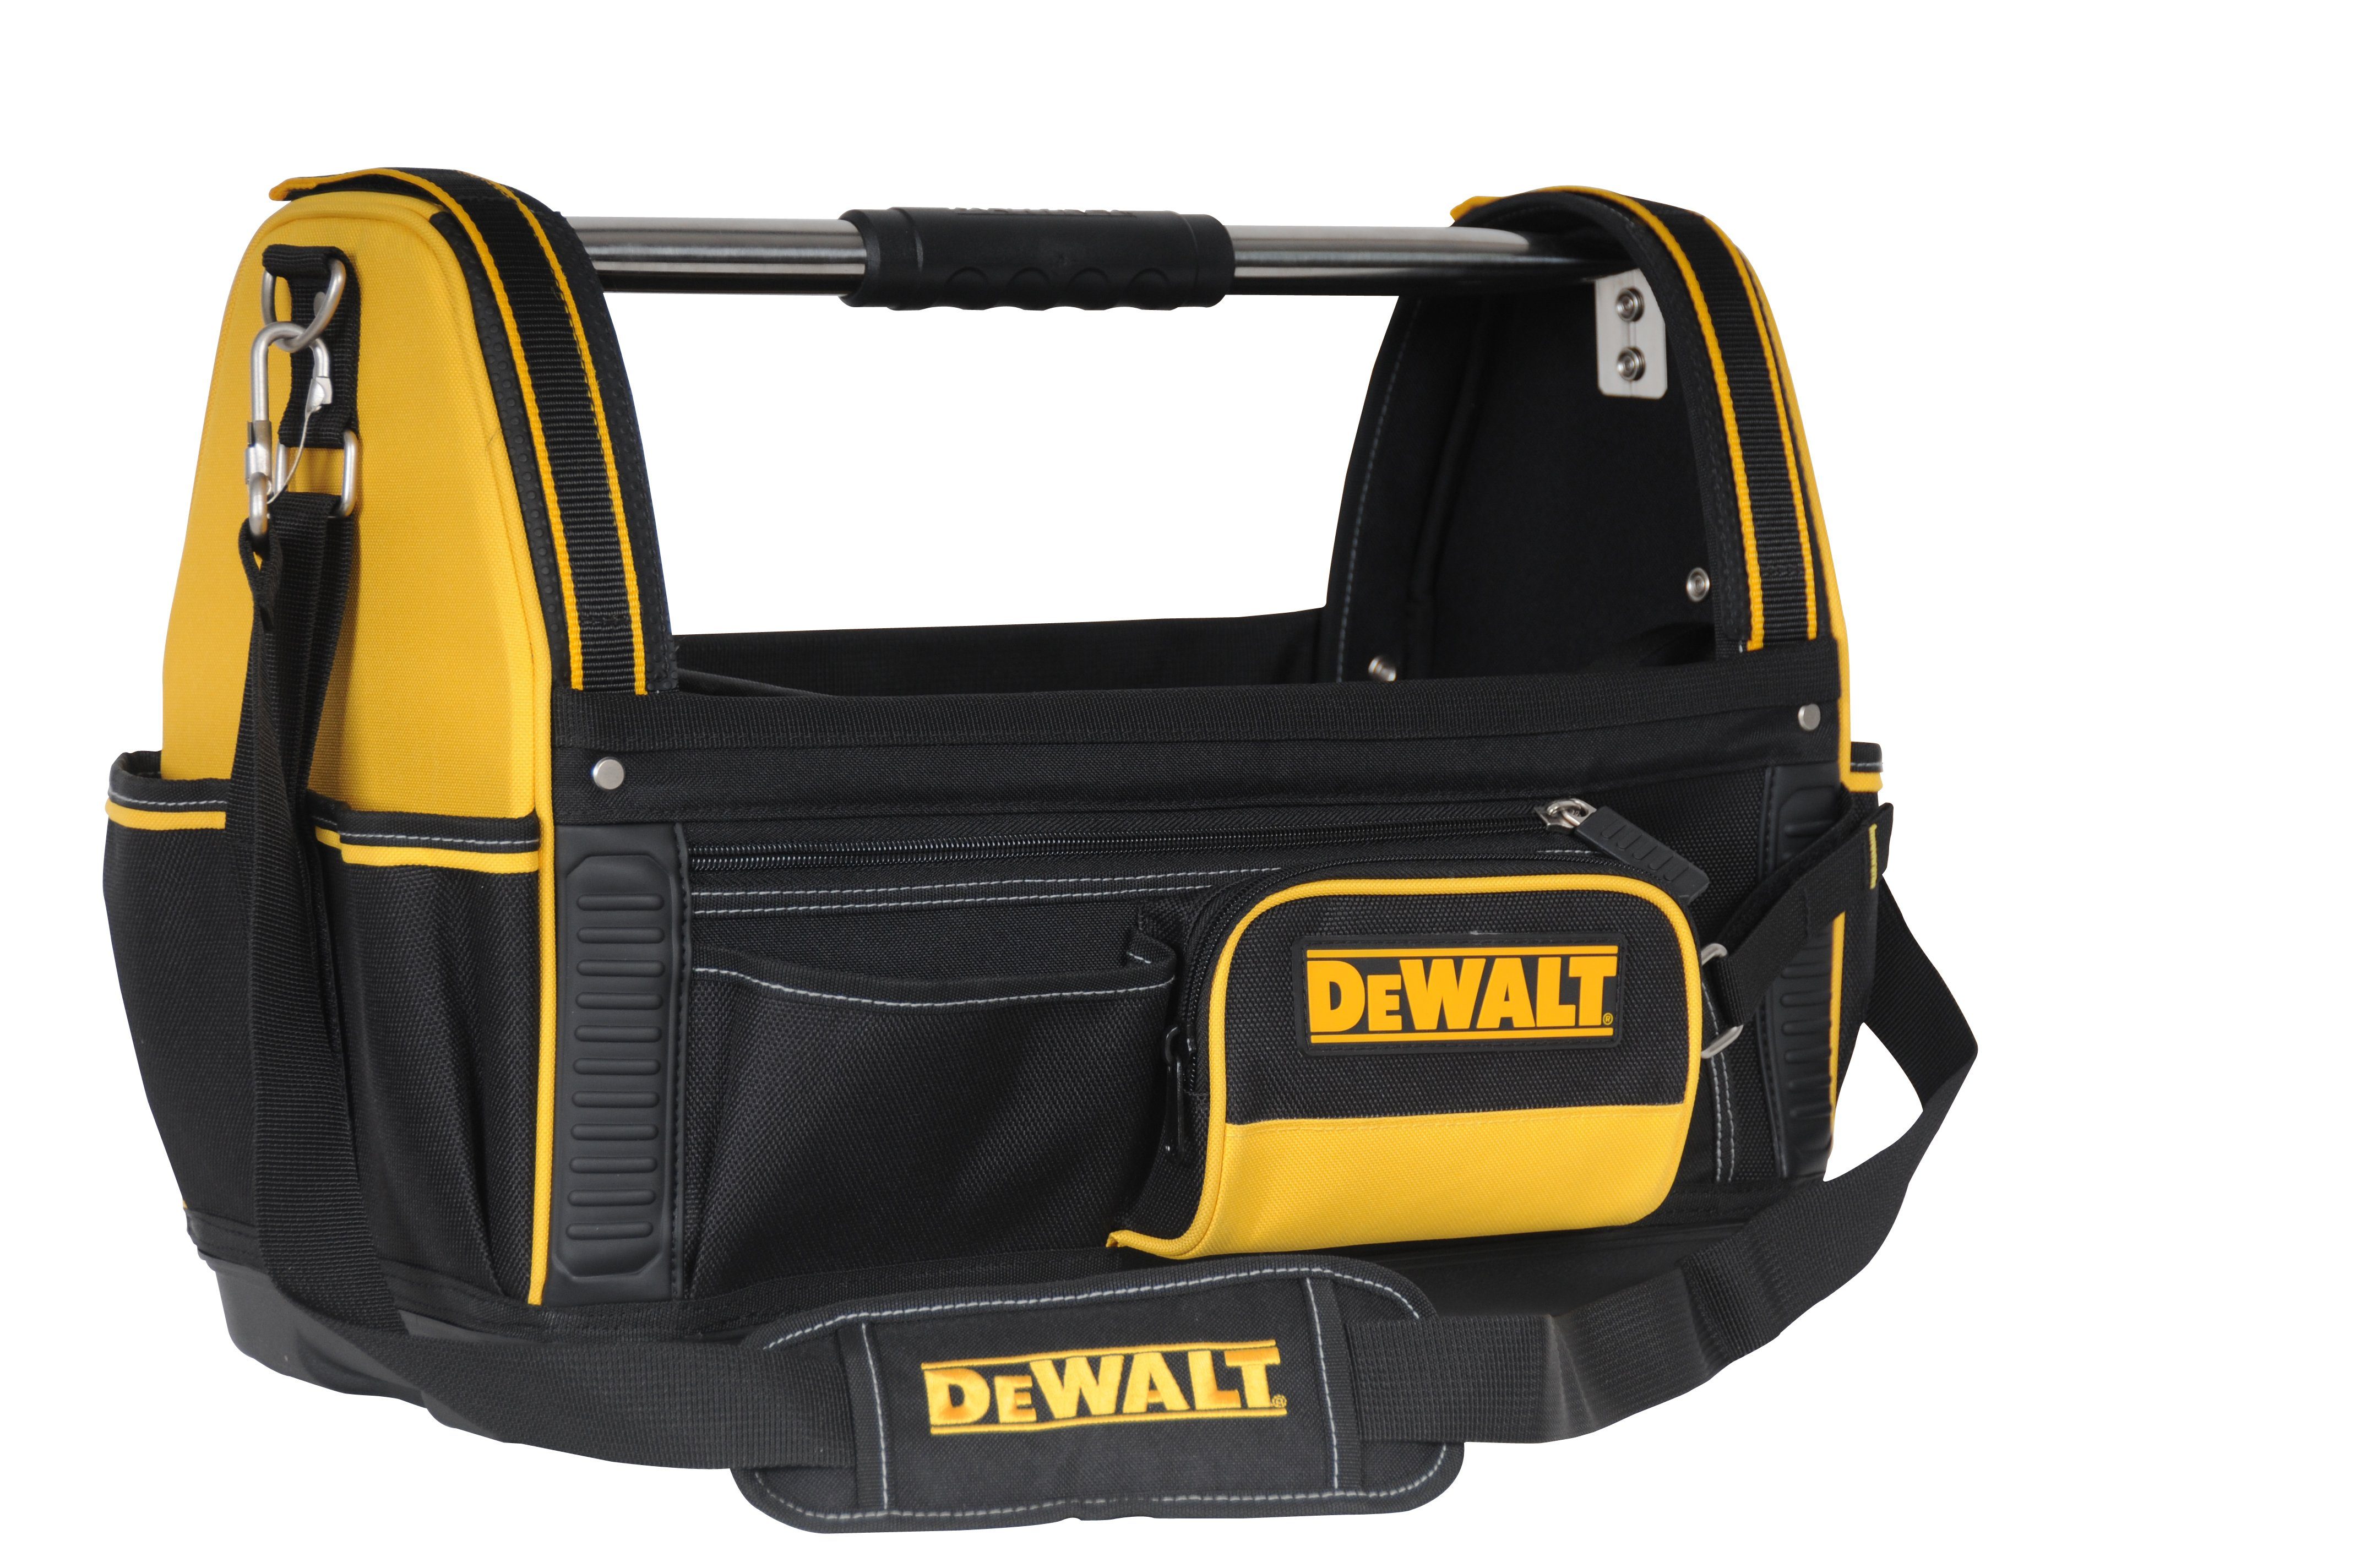 DeWalt Werkzeugtasche 1-79-208 - Werkzeugtrage / Werkzeugtasche / Tragetasche für Tool-Kit, 500 x 300 x 360 mm - Nylon